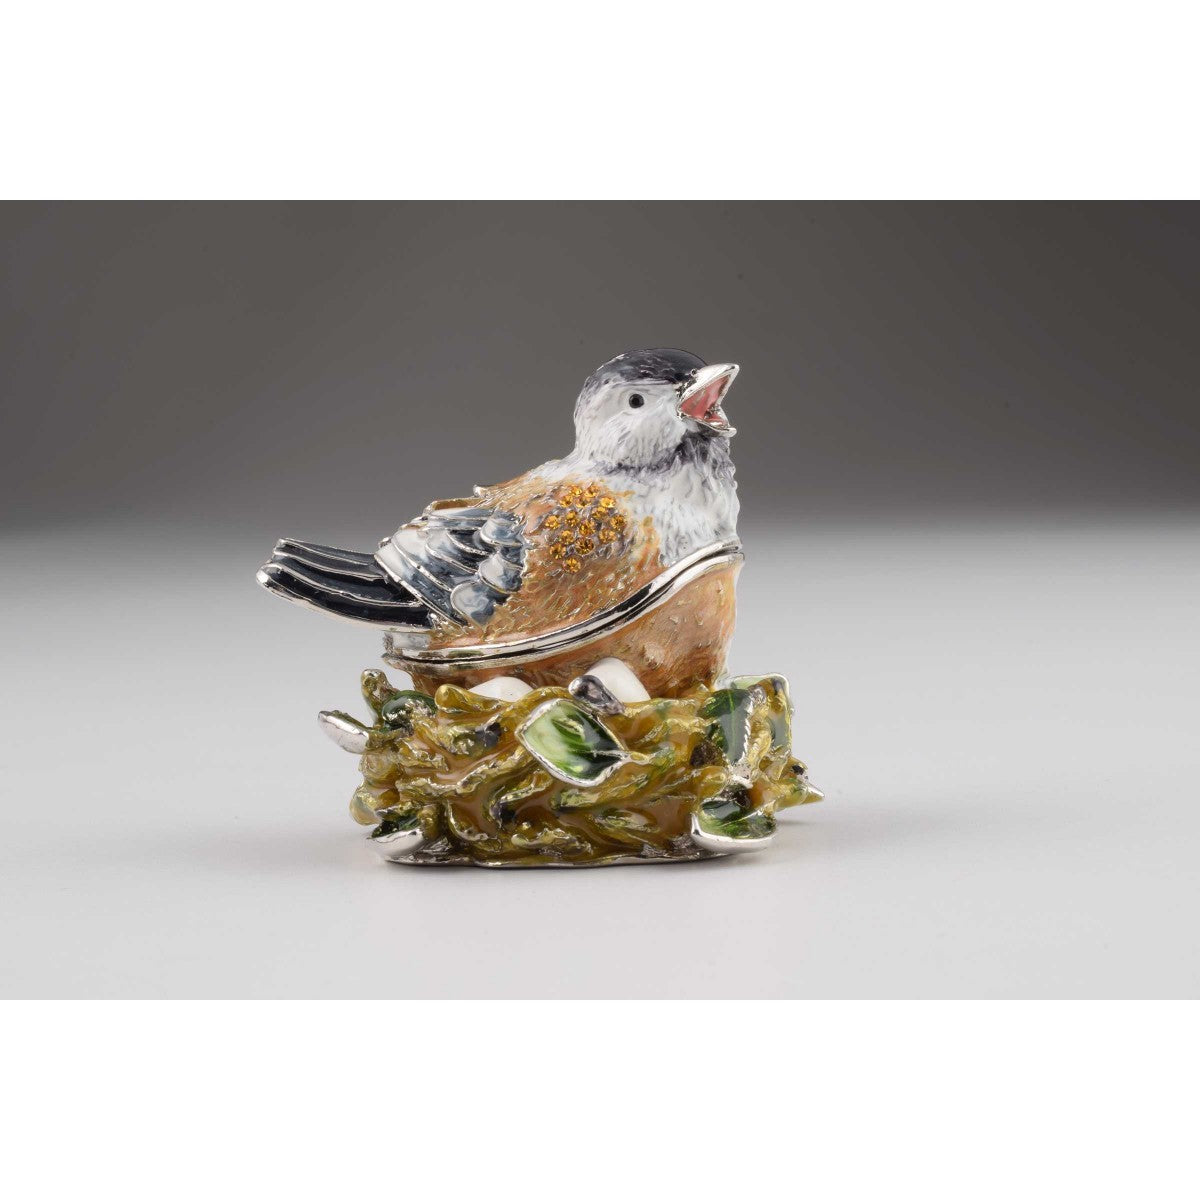 Bird Faberge Styled Trinket Box by Keren Kopal